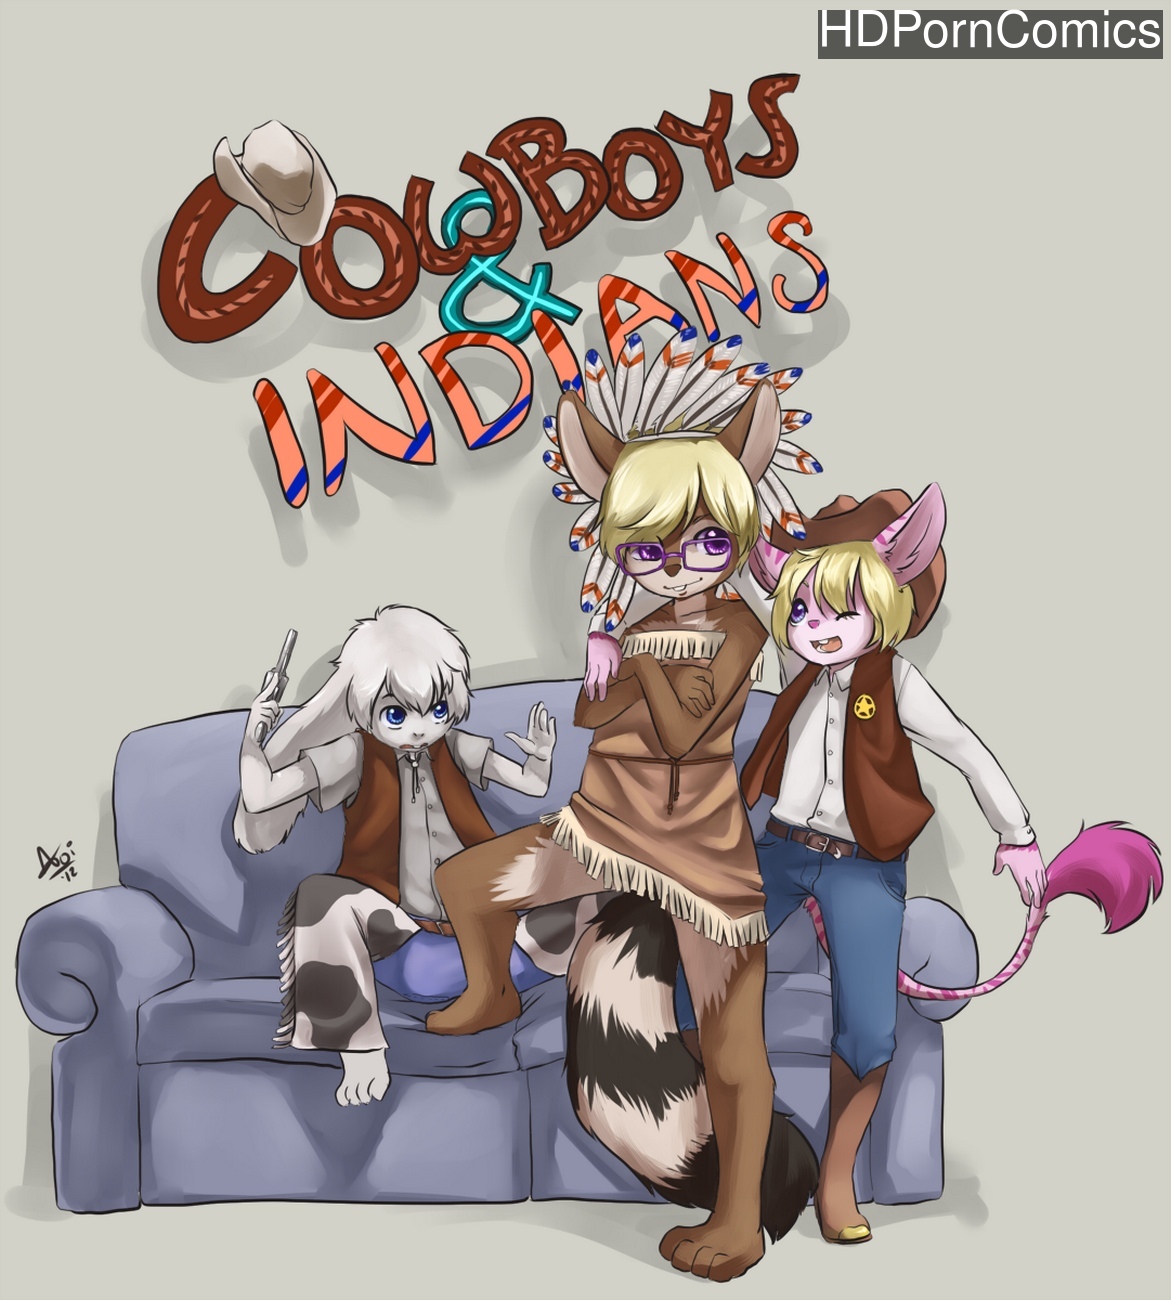 Cowboys And Indians comic porn â€“ HD Porn Comics